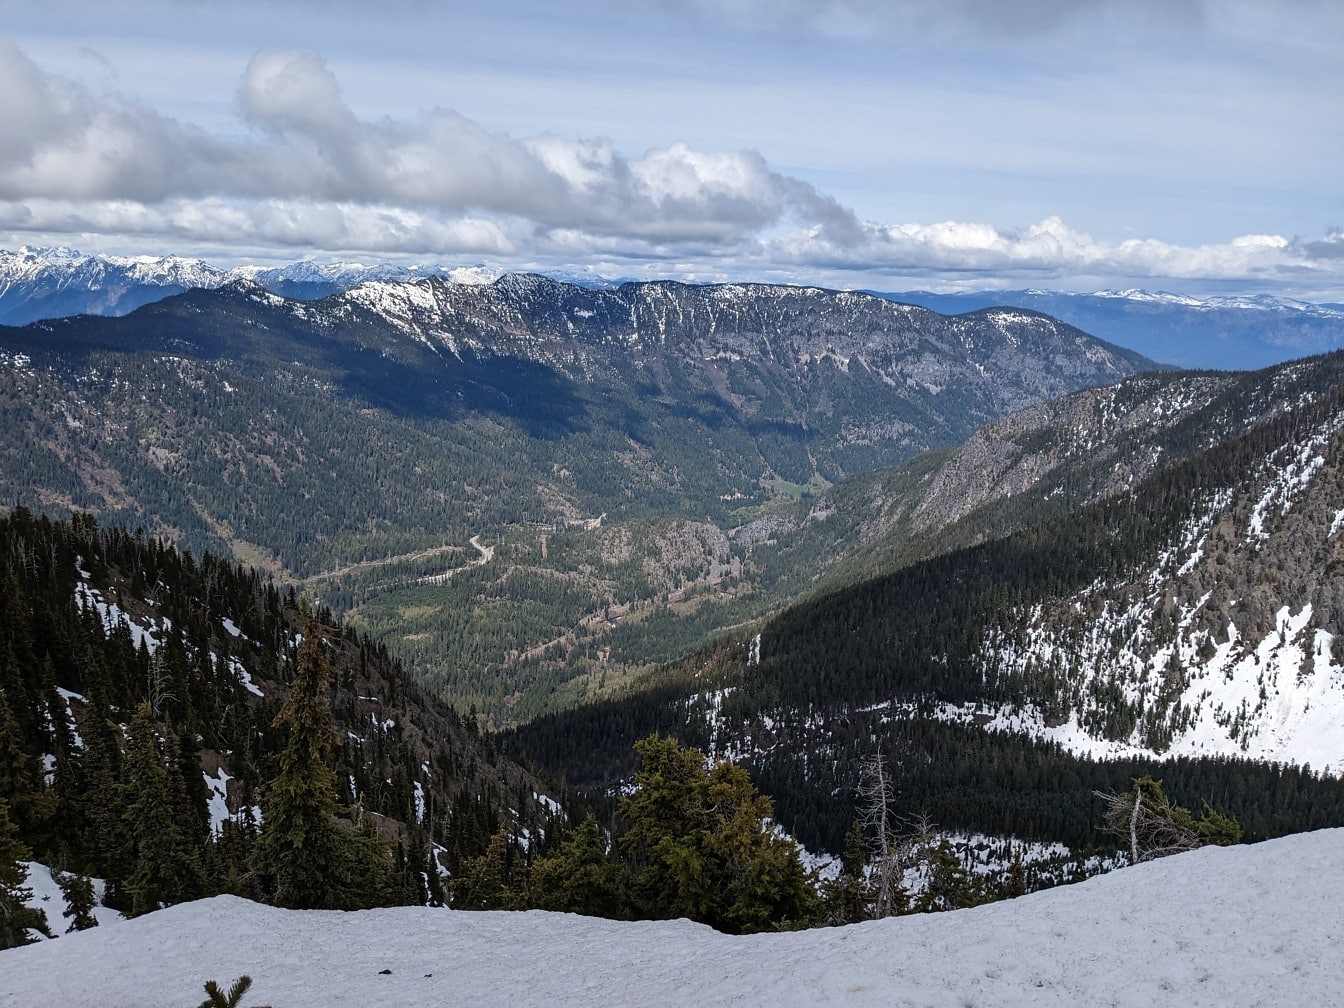 Panoramautsikt från toppen av snöiga berg i nationalparken